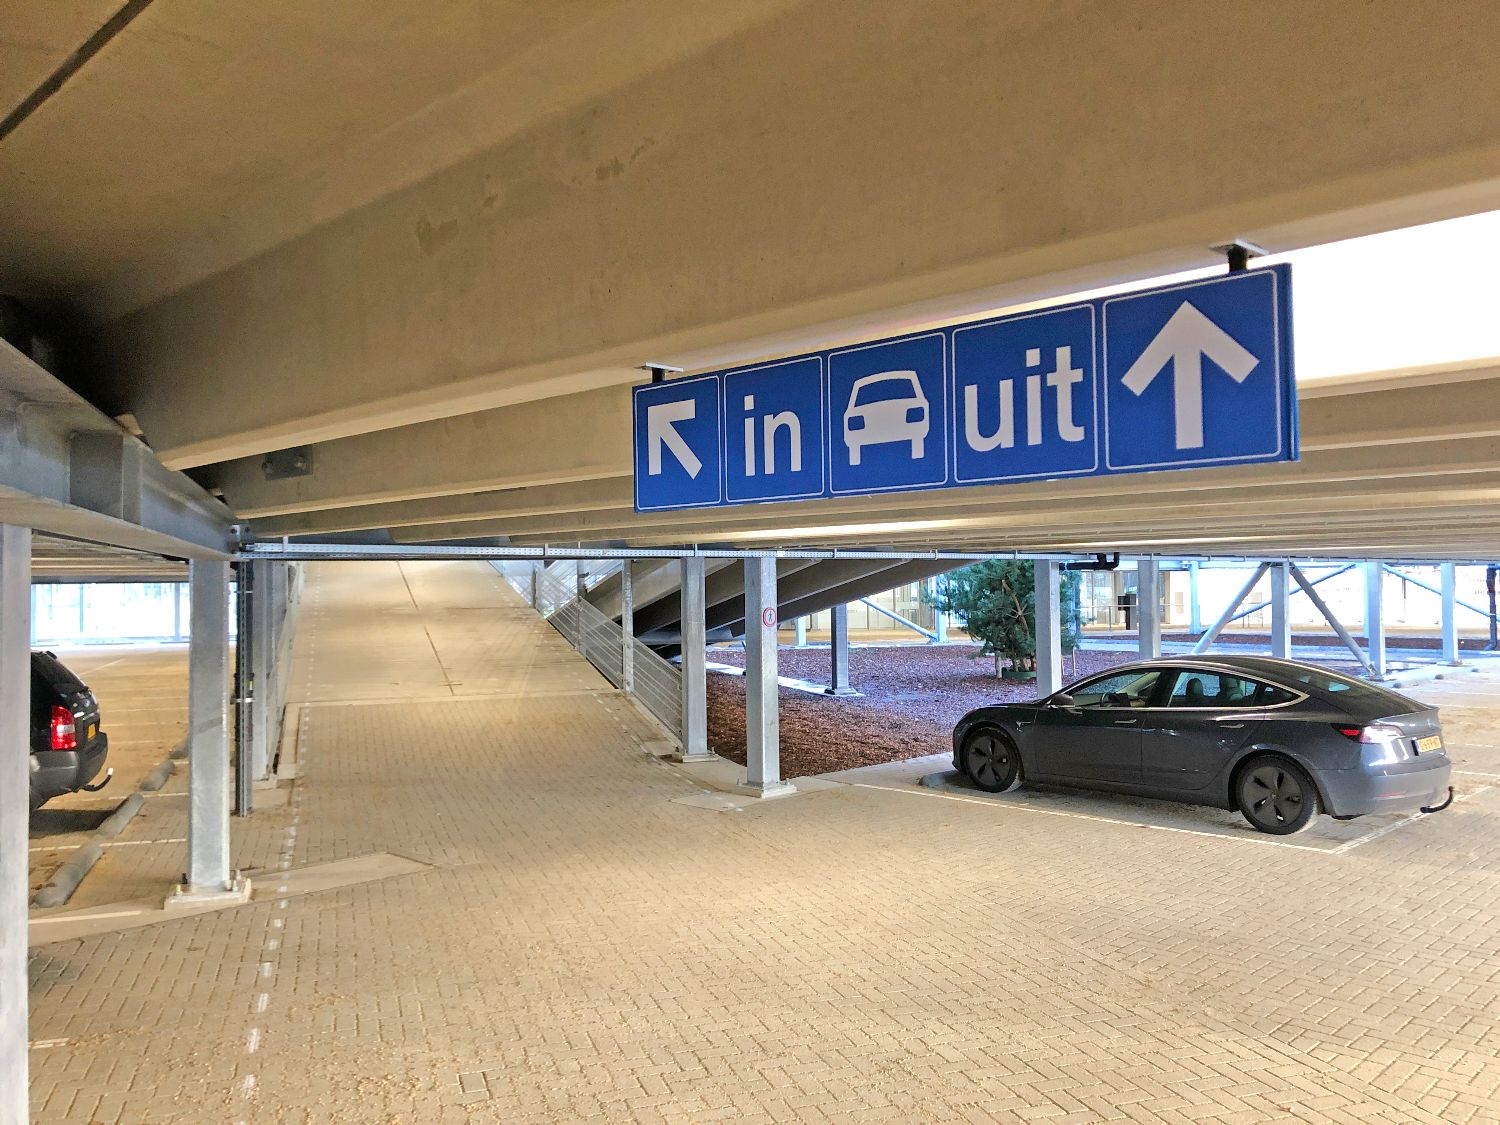 Autoroutebord in parkeergarage P+R Genneper Parken in Gemeente Eindhoven.